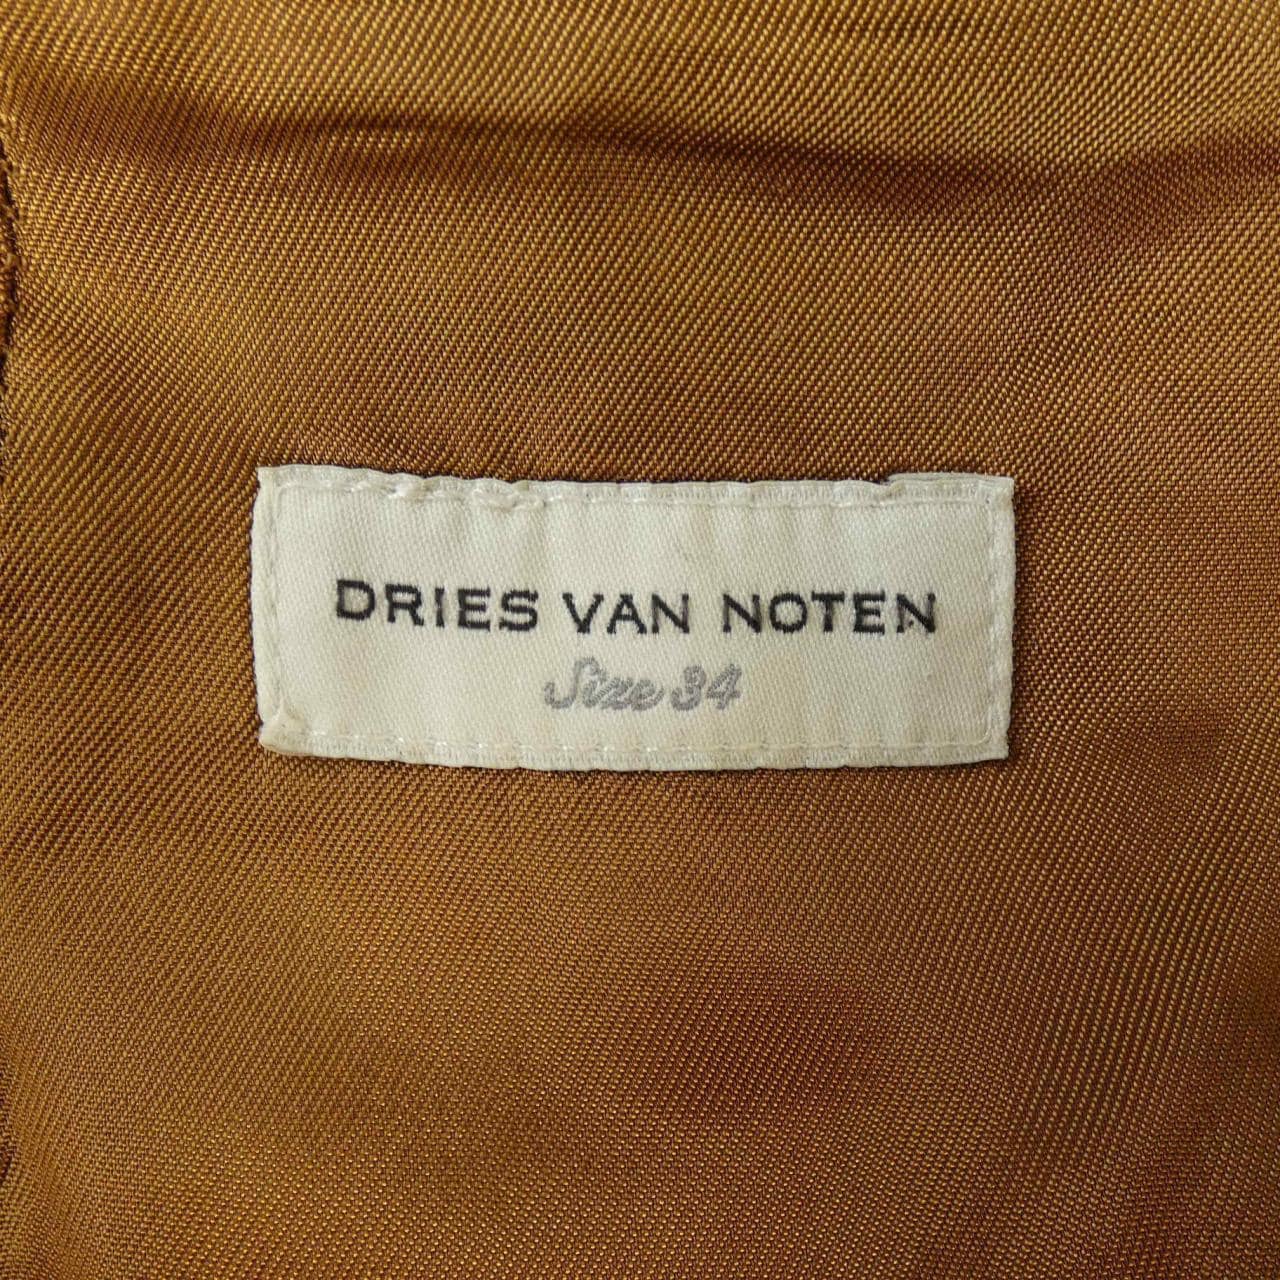 DRIES VAN NOTEN德赖斯·范诺顿 (Dries Van Noten) 半身裙